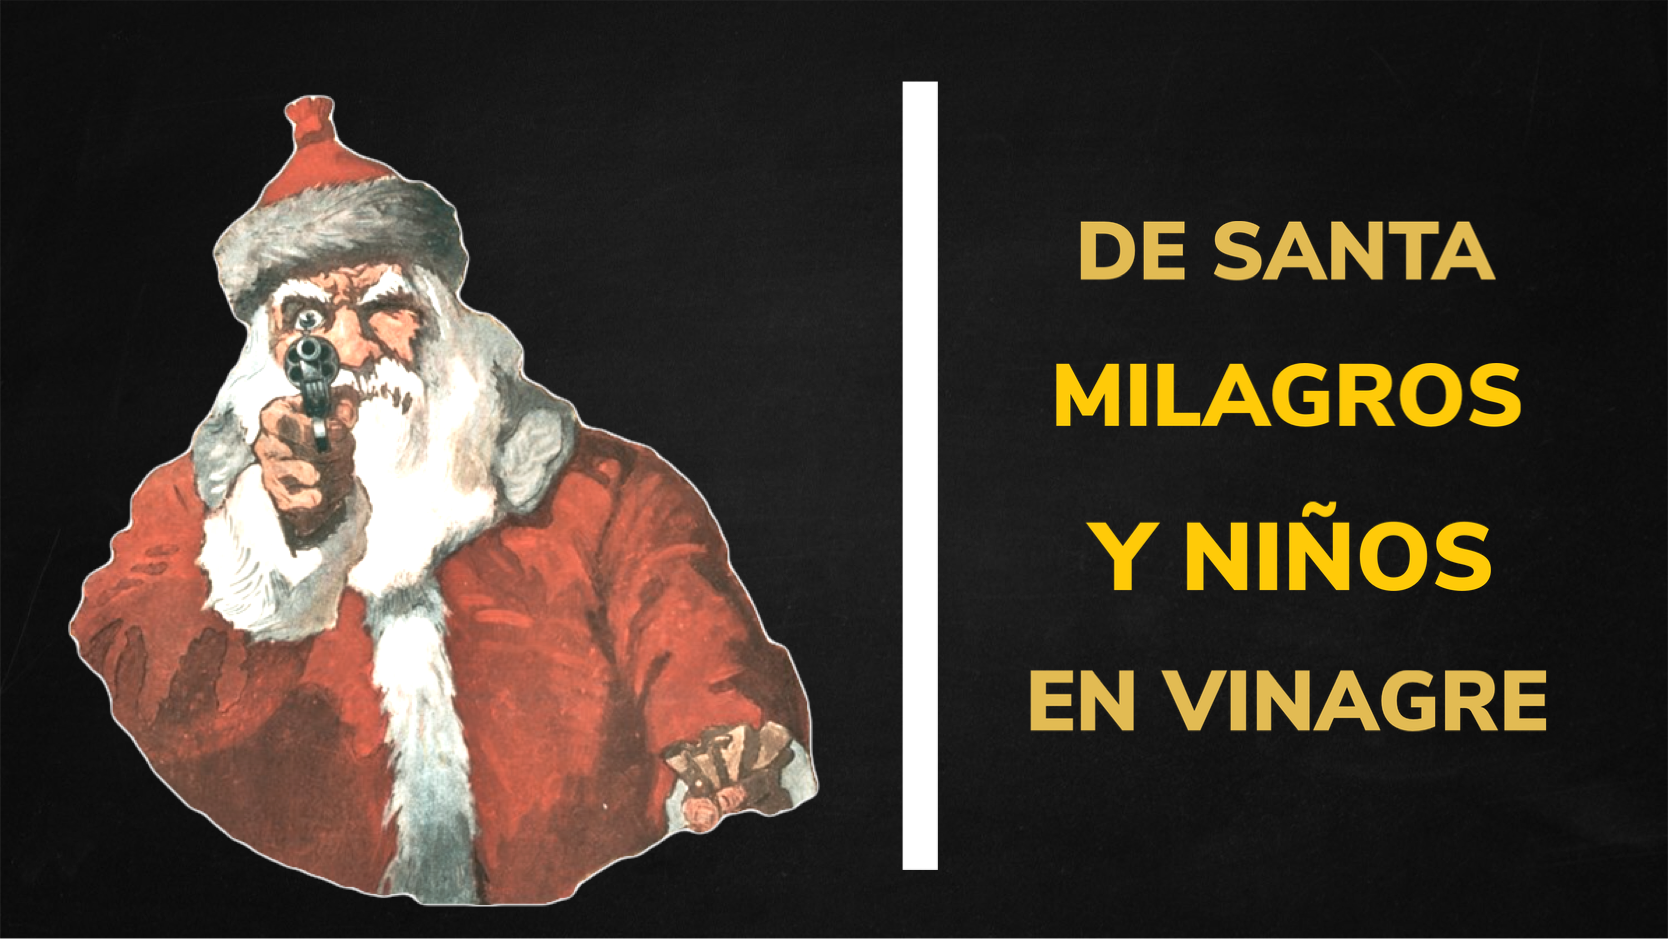 Santa, milagros y niños en vinagre. Mitología Navideña.